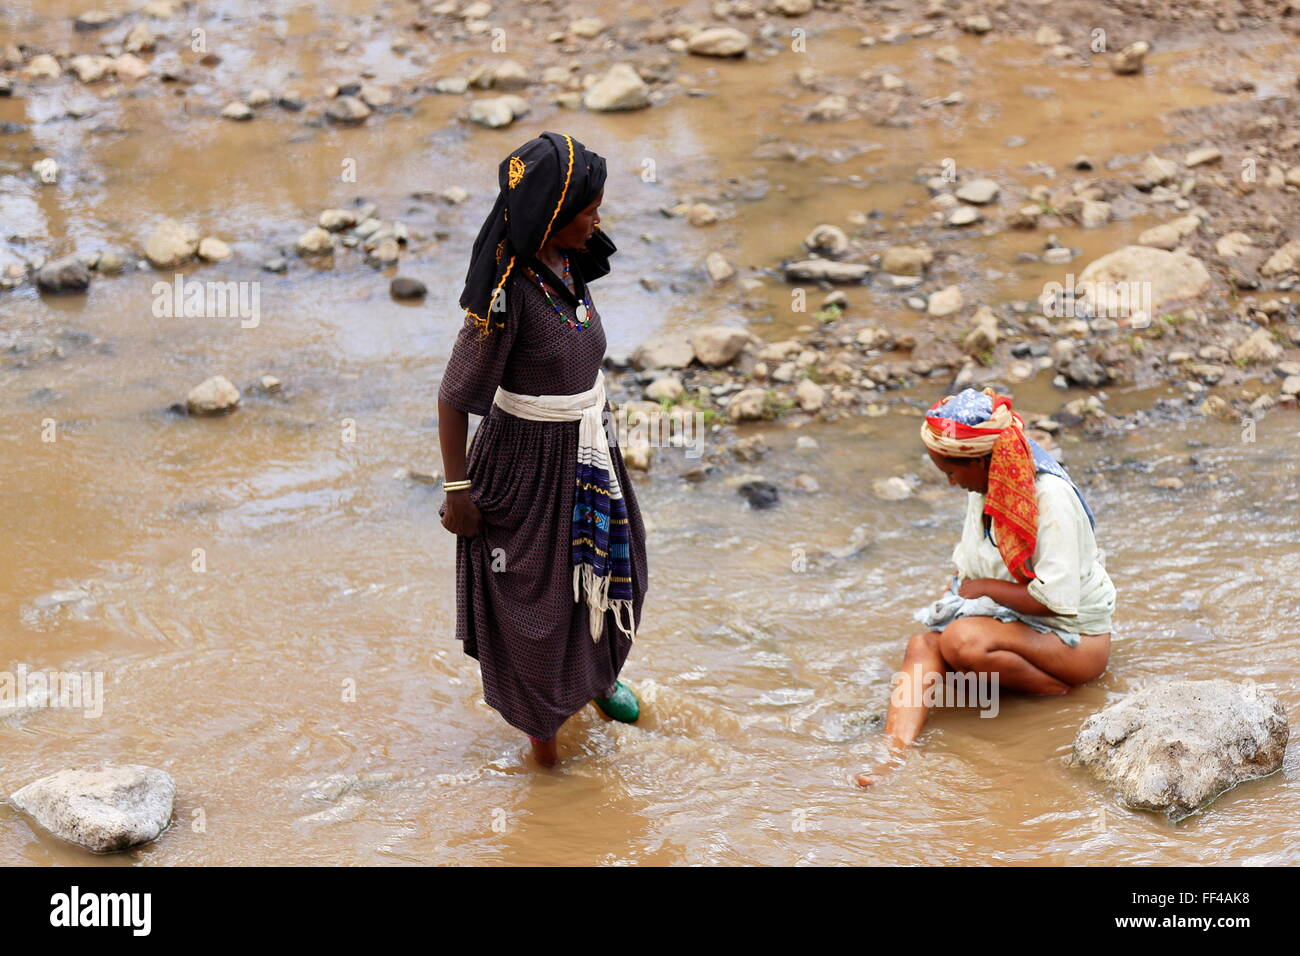 SENBETE, ETIOPIA-marzo 24, 2013: Le donne-oromo chat persone e organi di lavaggio in acqua di fiume che scorre attraverso il mercato. Foto Stock